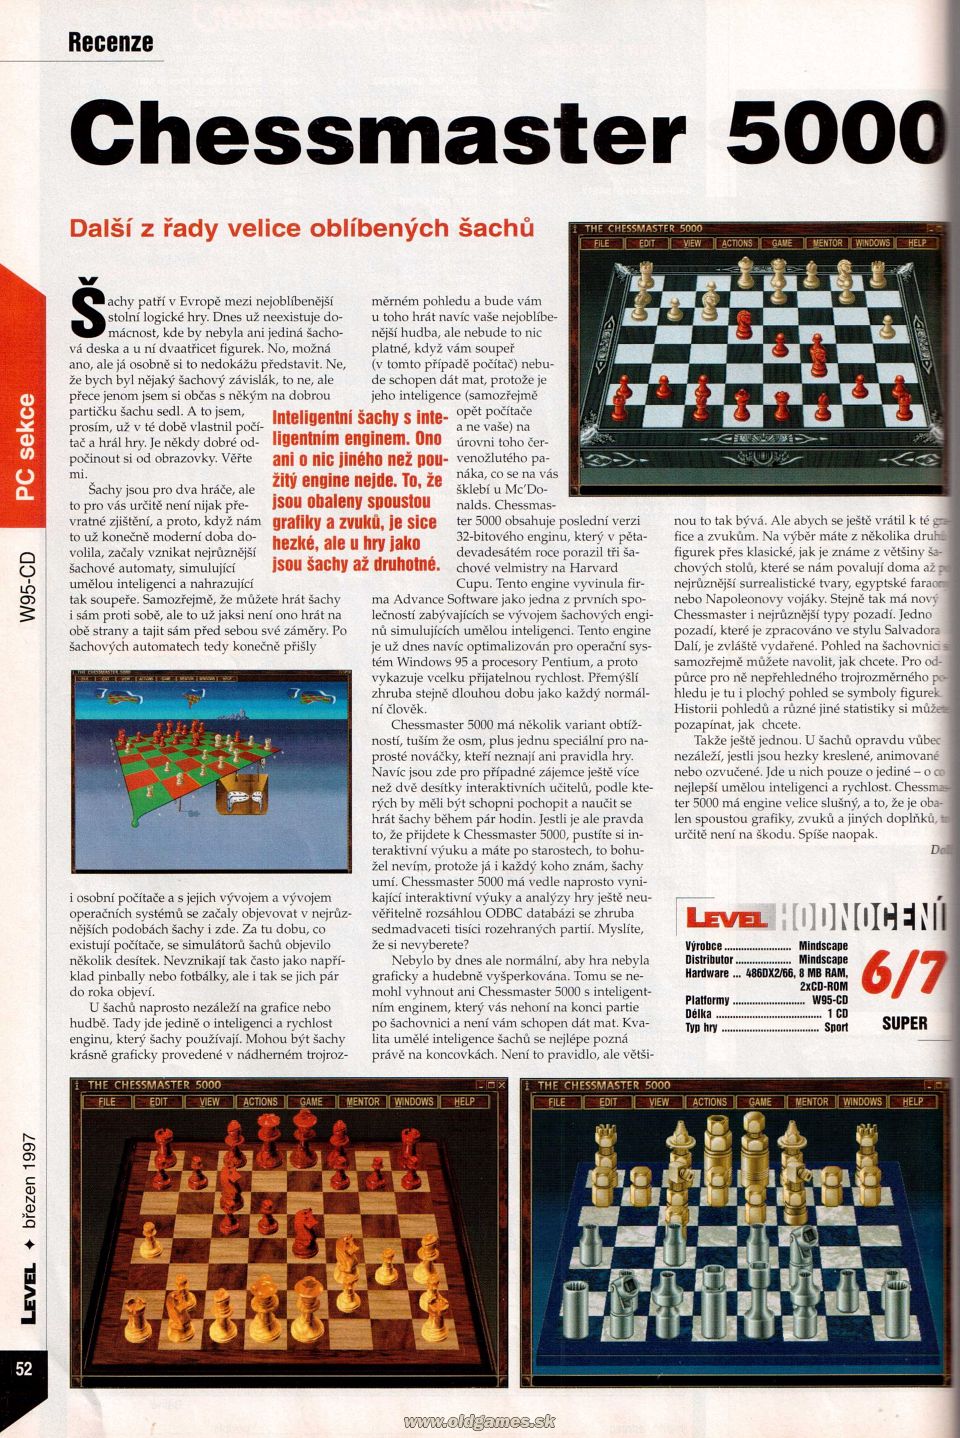 Chessmaster 5000